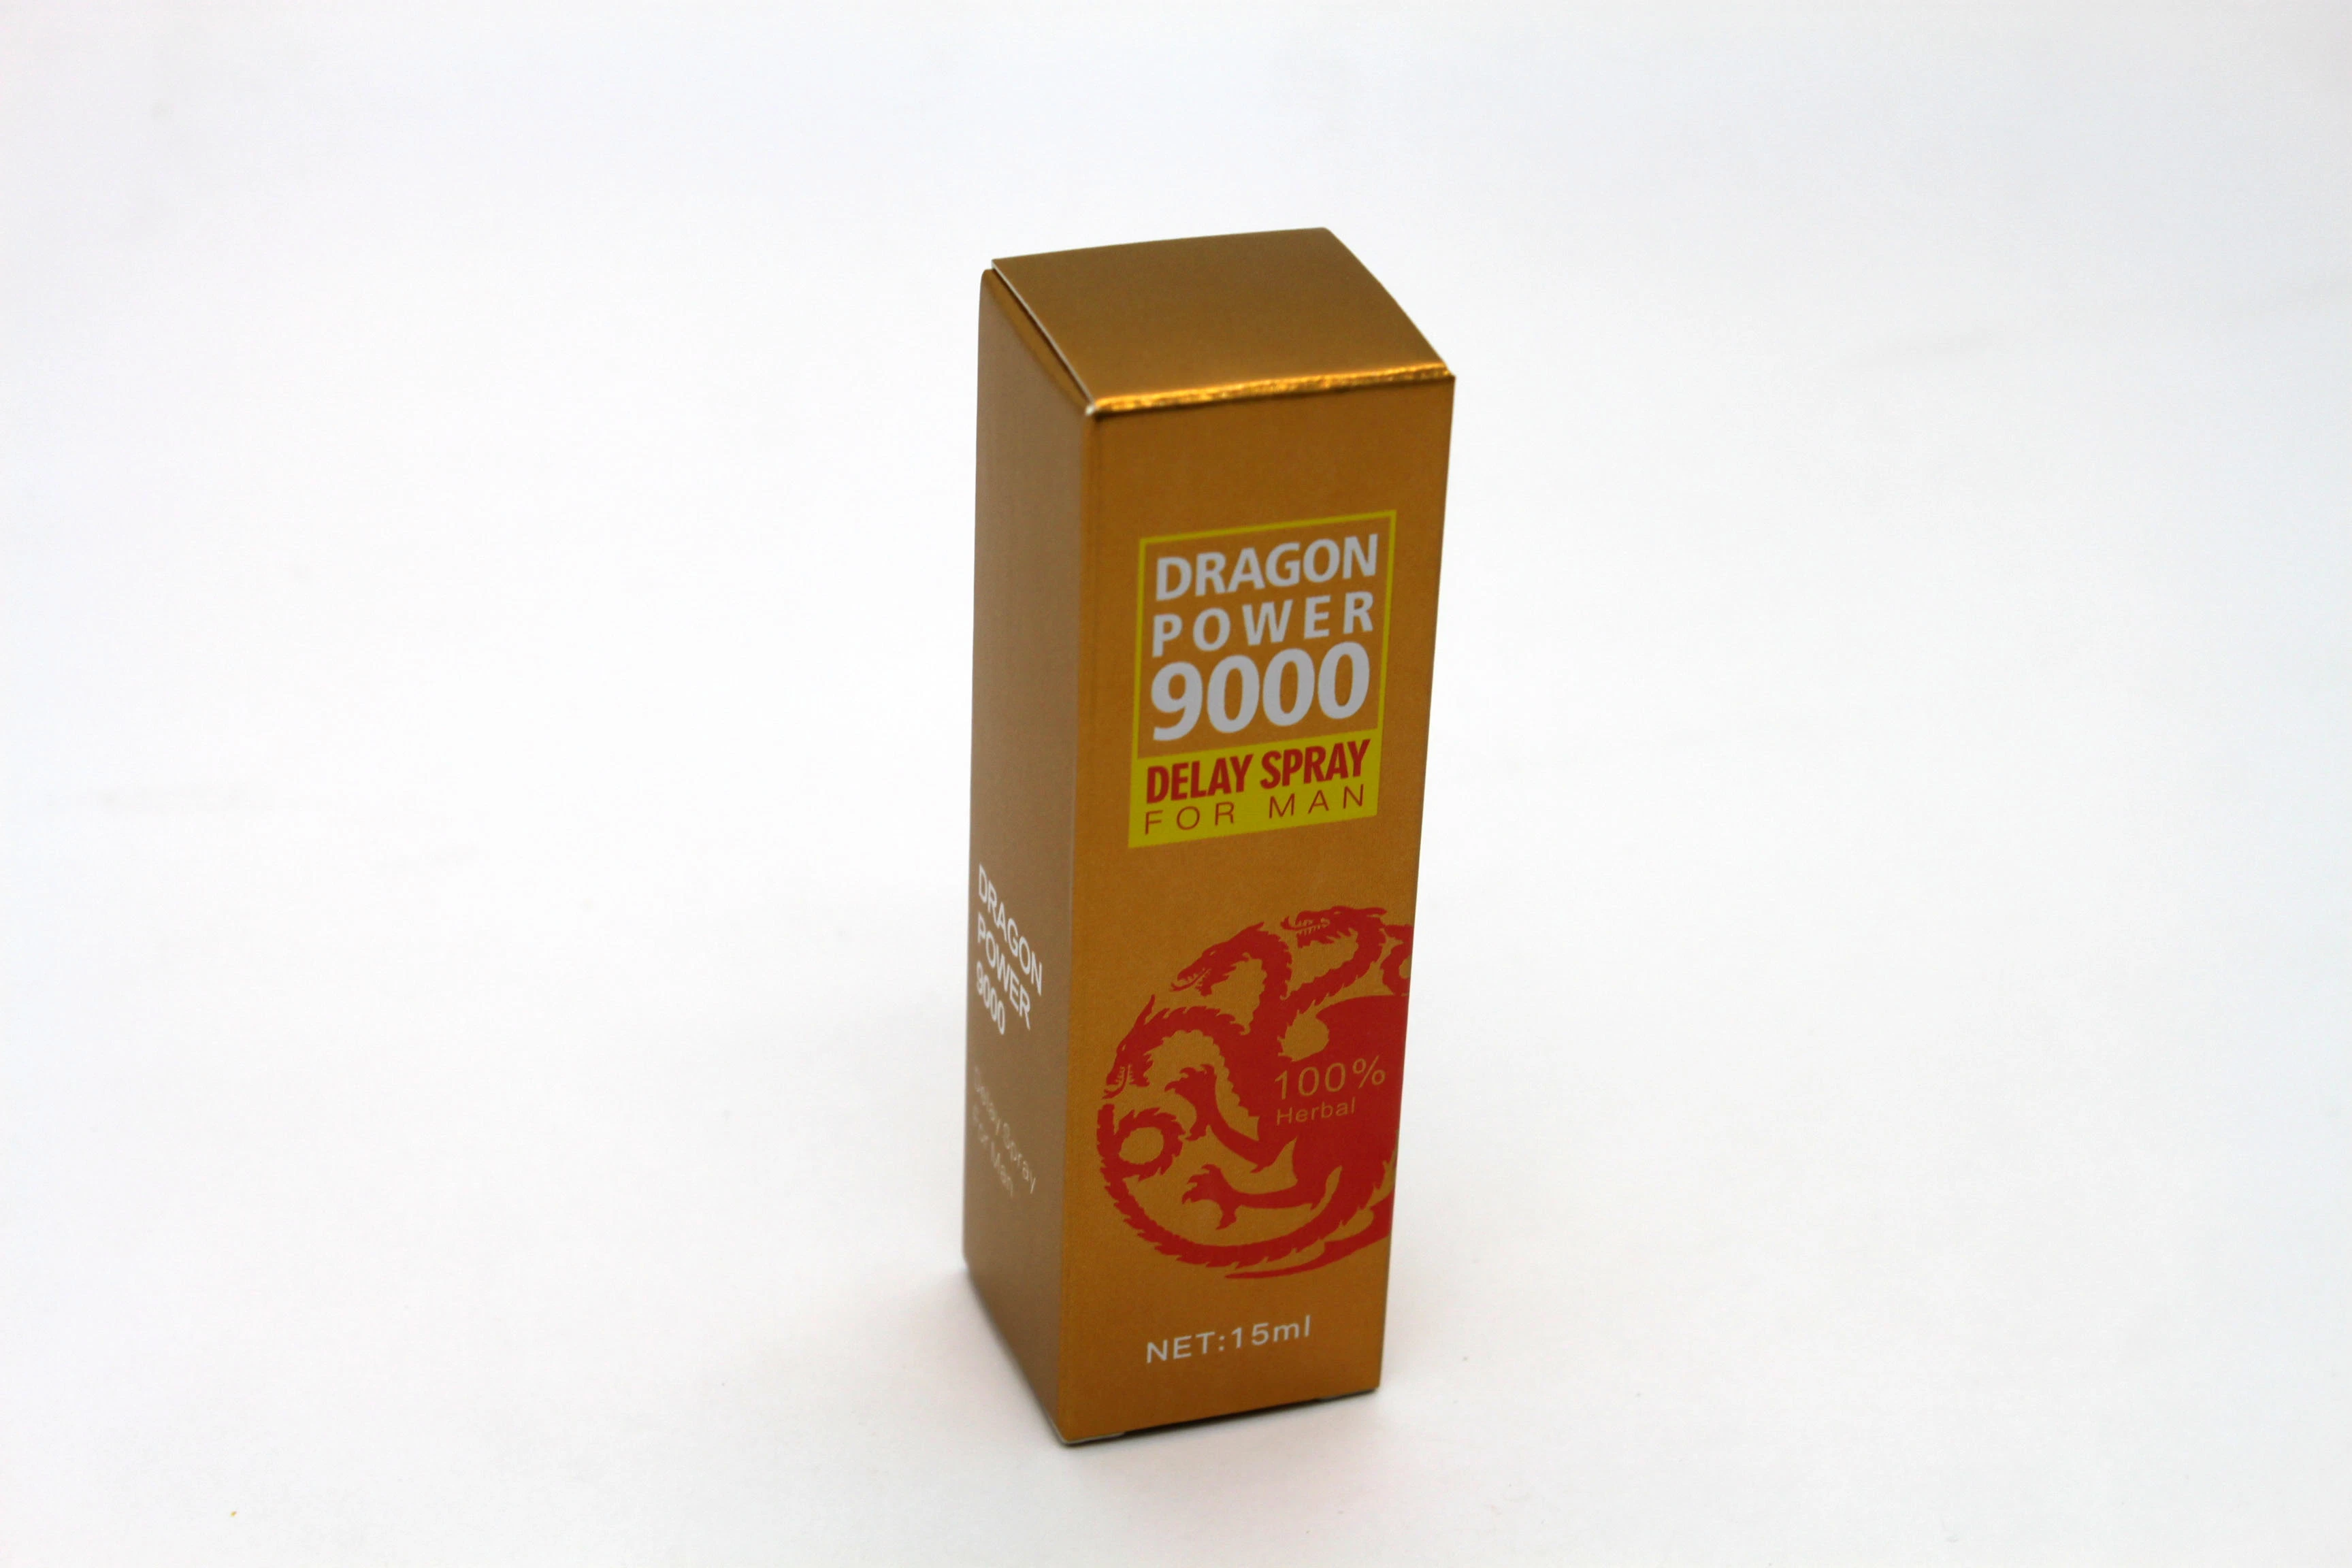 Una muestra gratis 100% Herbal poder dragón 9000 Sexo Productos demora Spray para los hombres siempre prematuro el rendimiento de resistencia